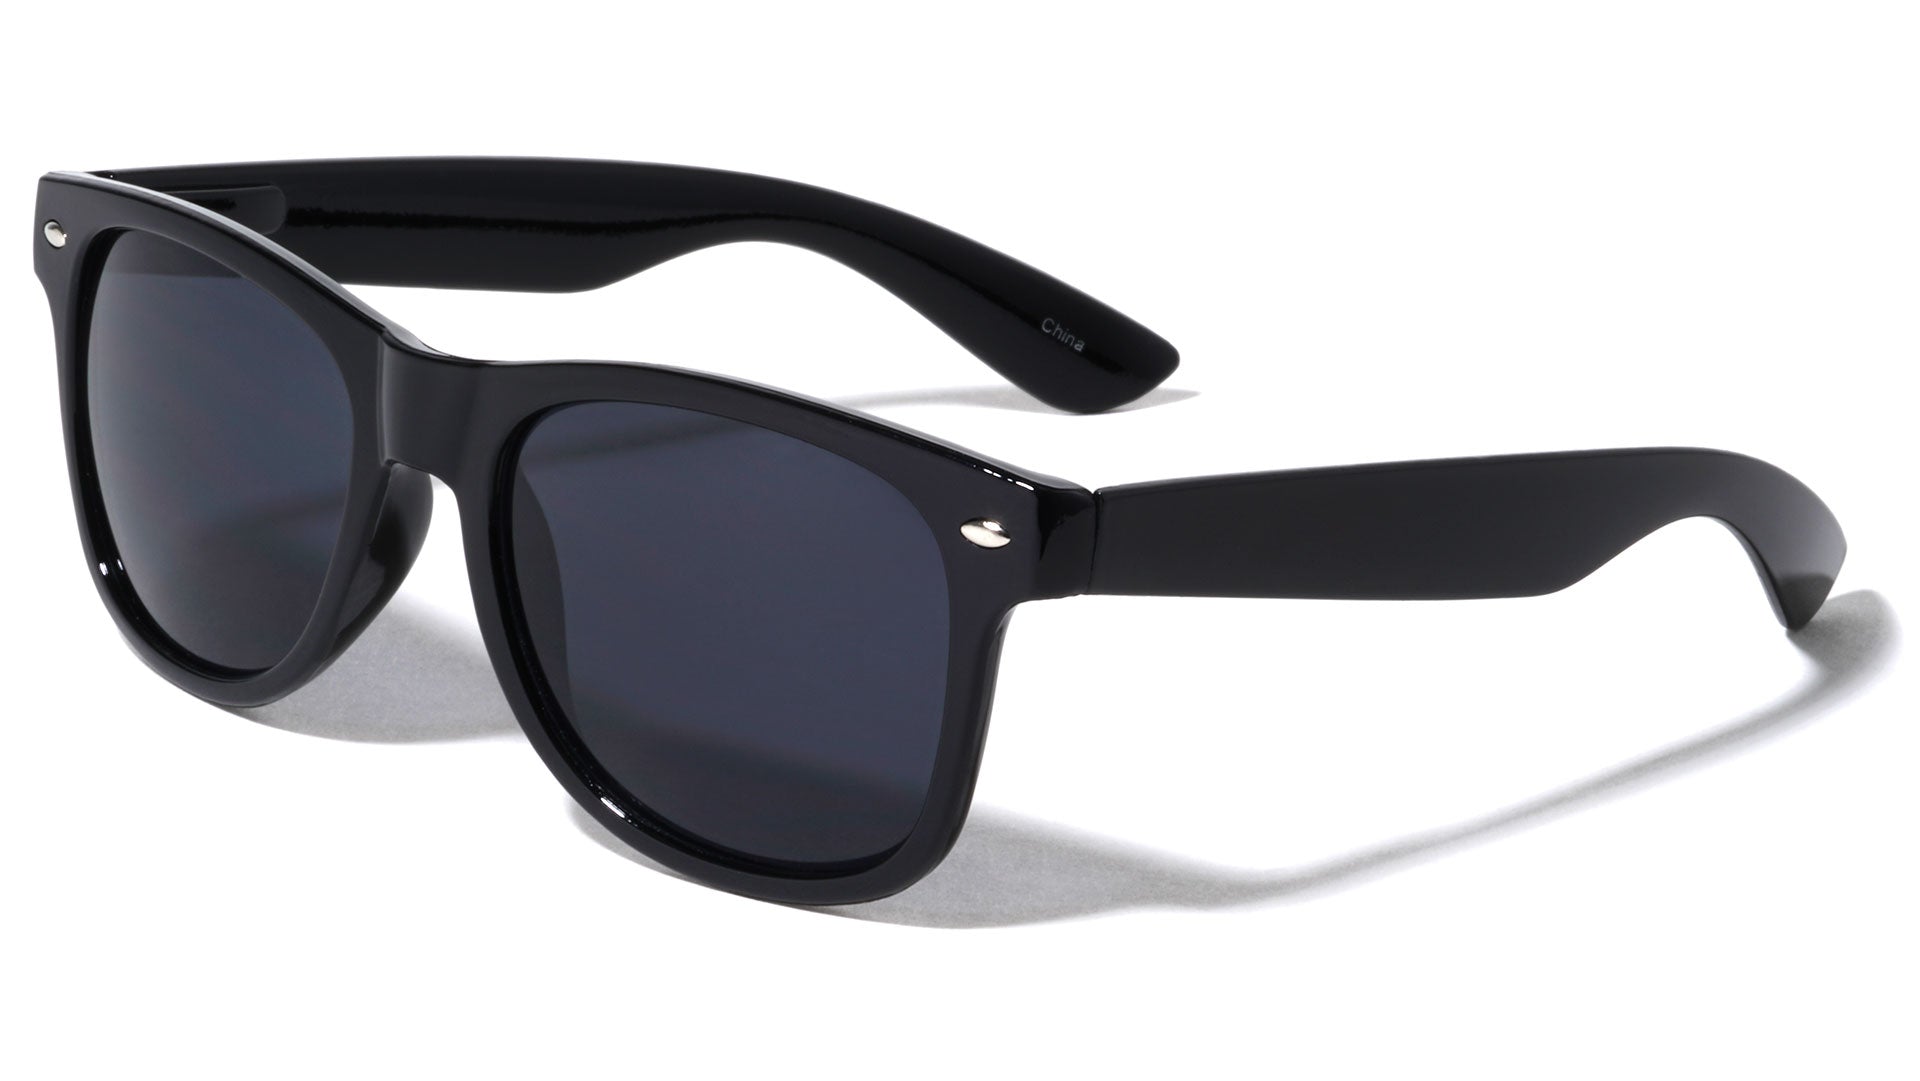 Assorted Dozen (12) Classic Spring Hinge Sunglasses with Super Dark Lens